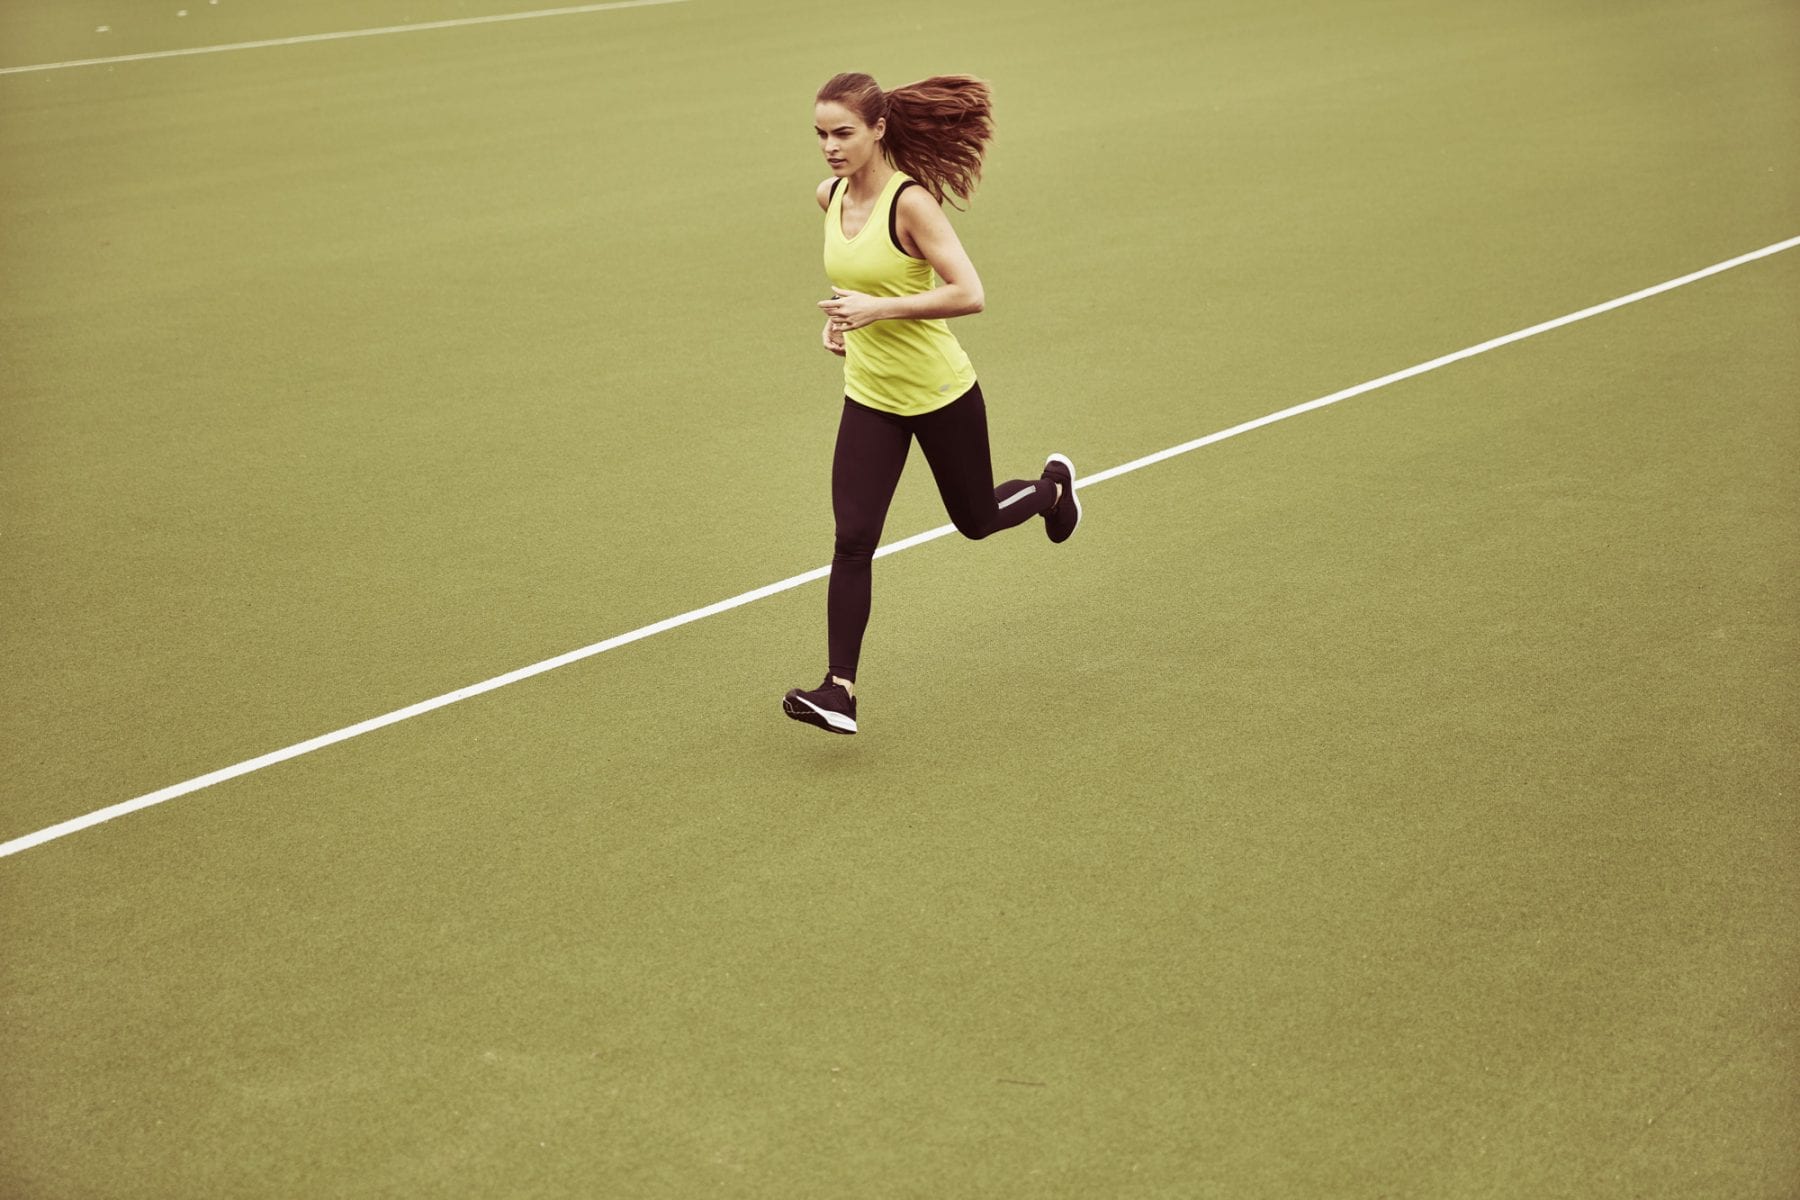 Kosttilskud og løb? Optimer din løbetræning med kosttilskud